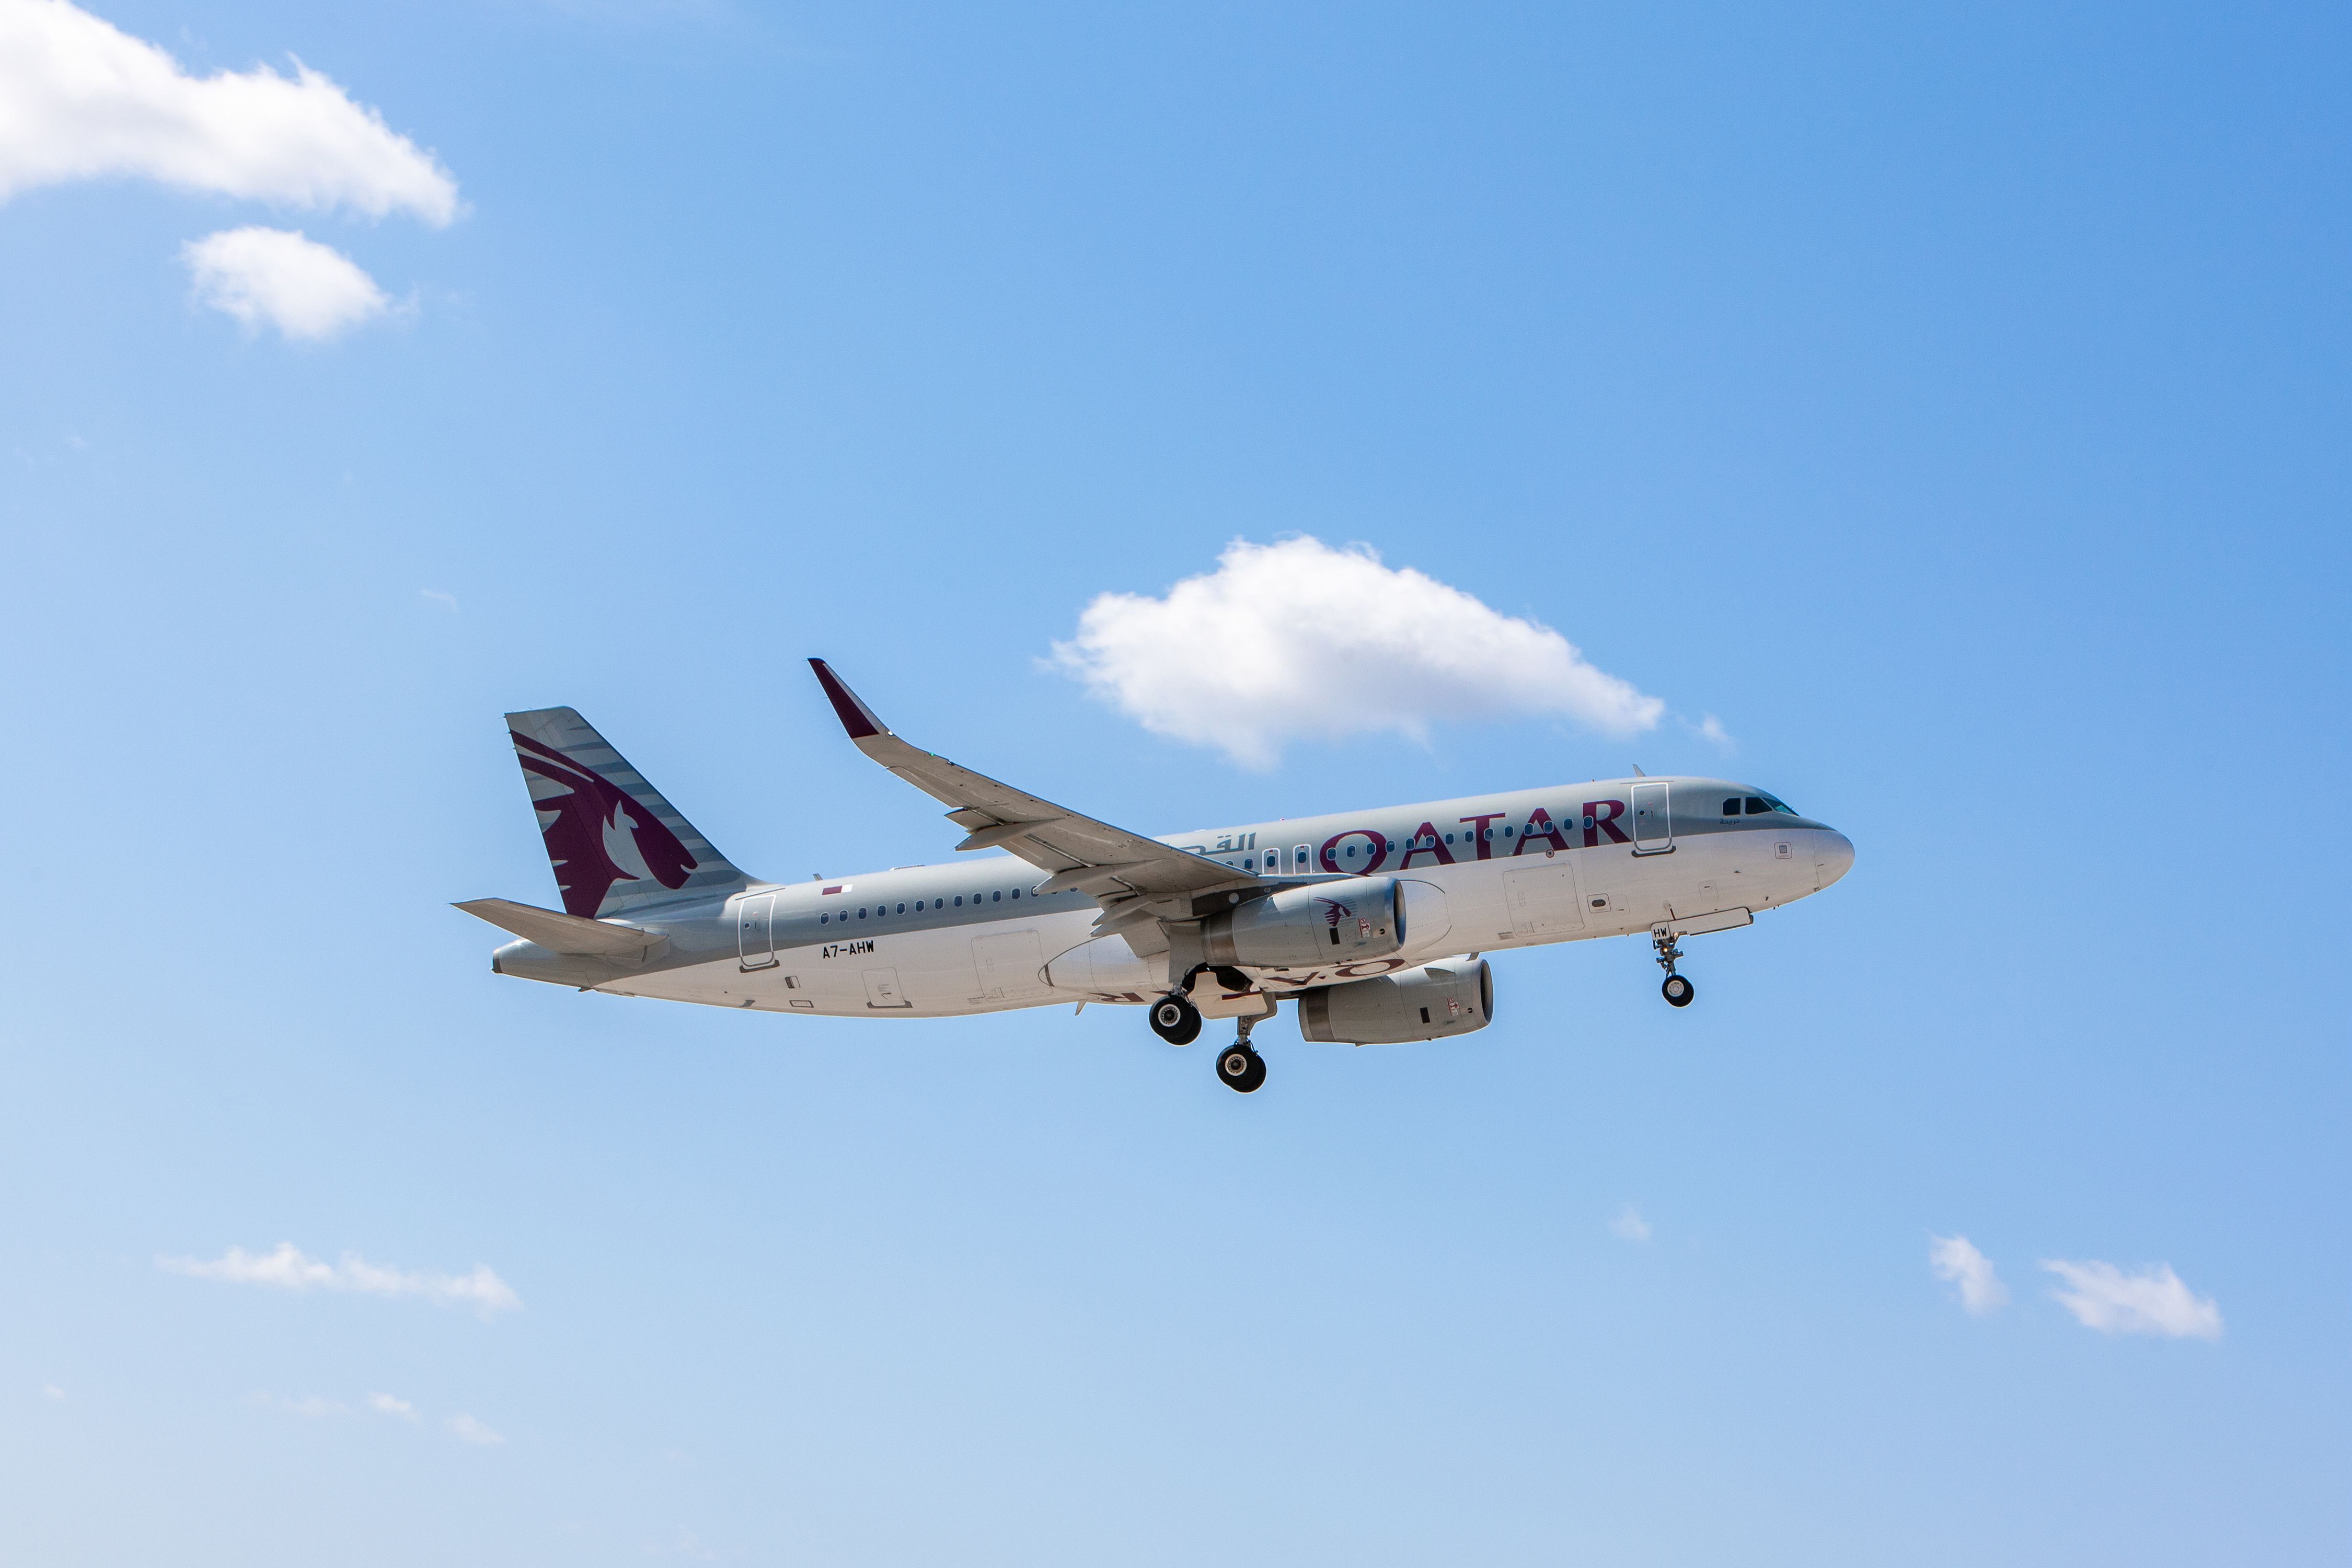 A Qatar Airways Airbus A320 flying in a blue sky